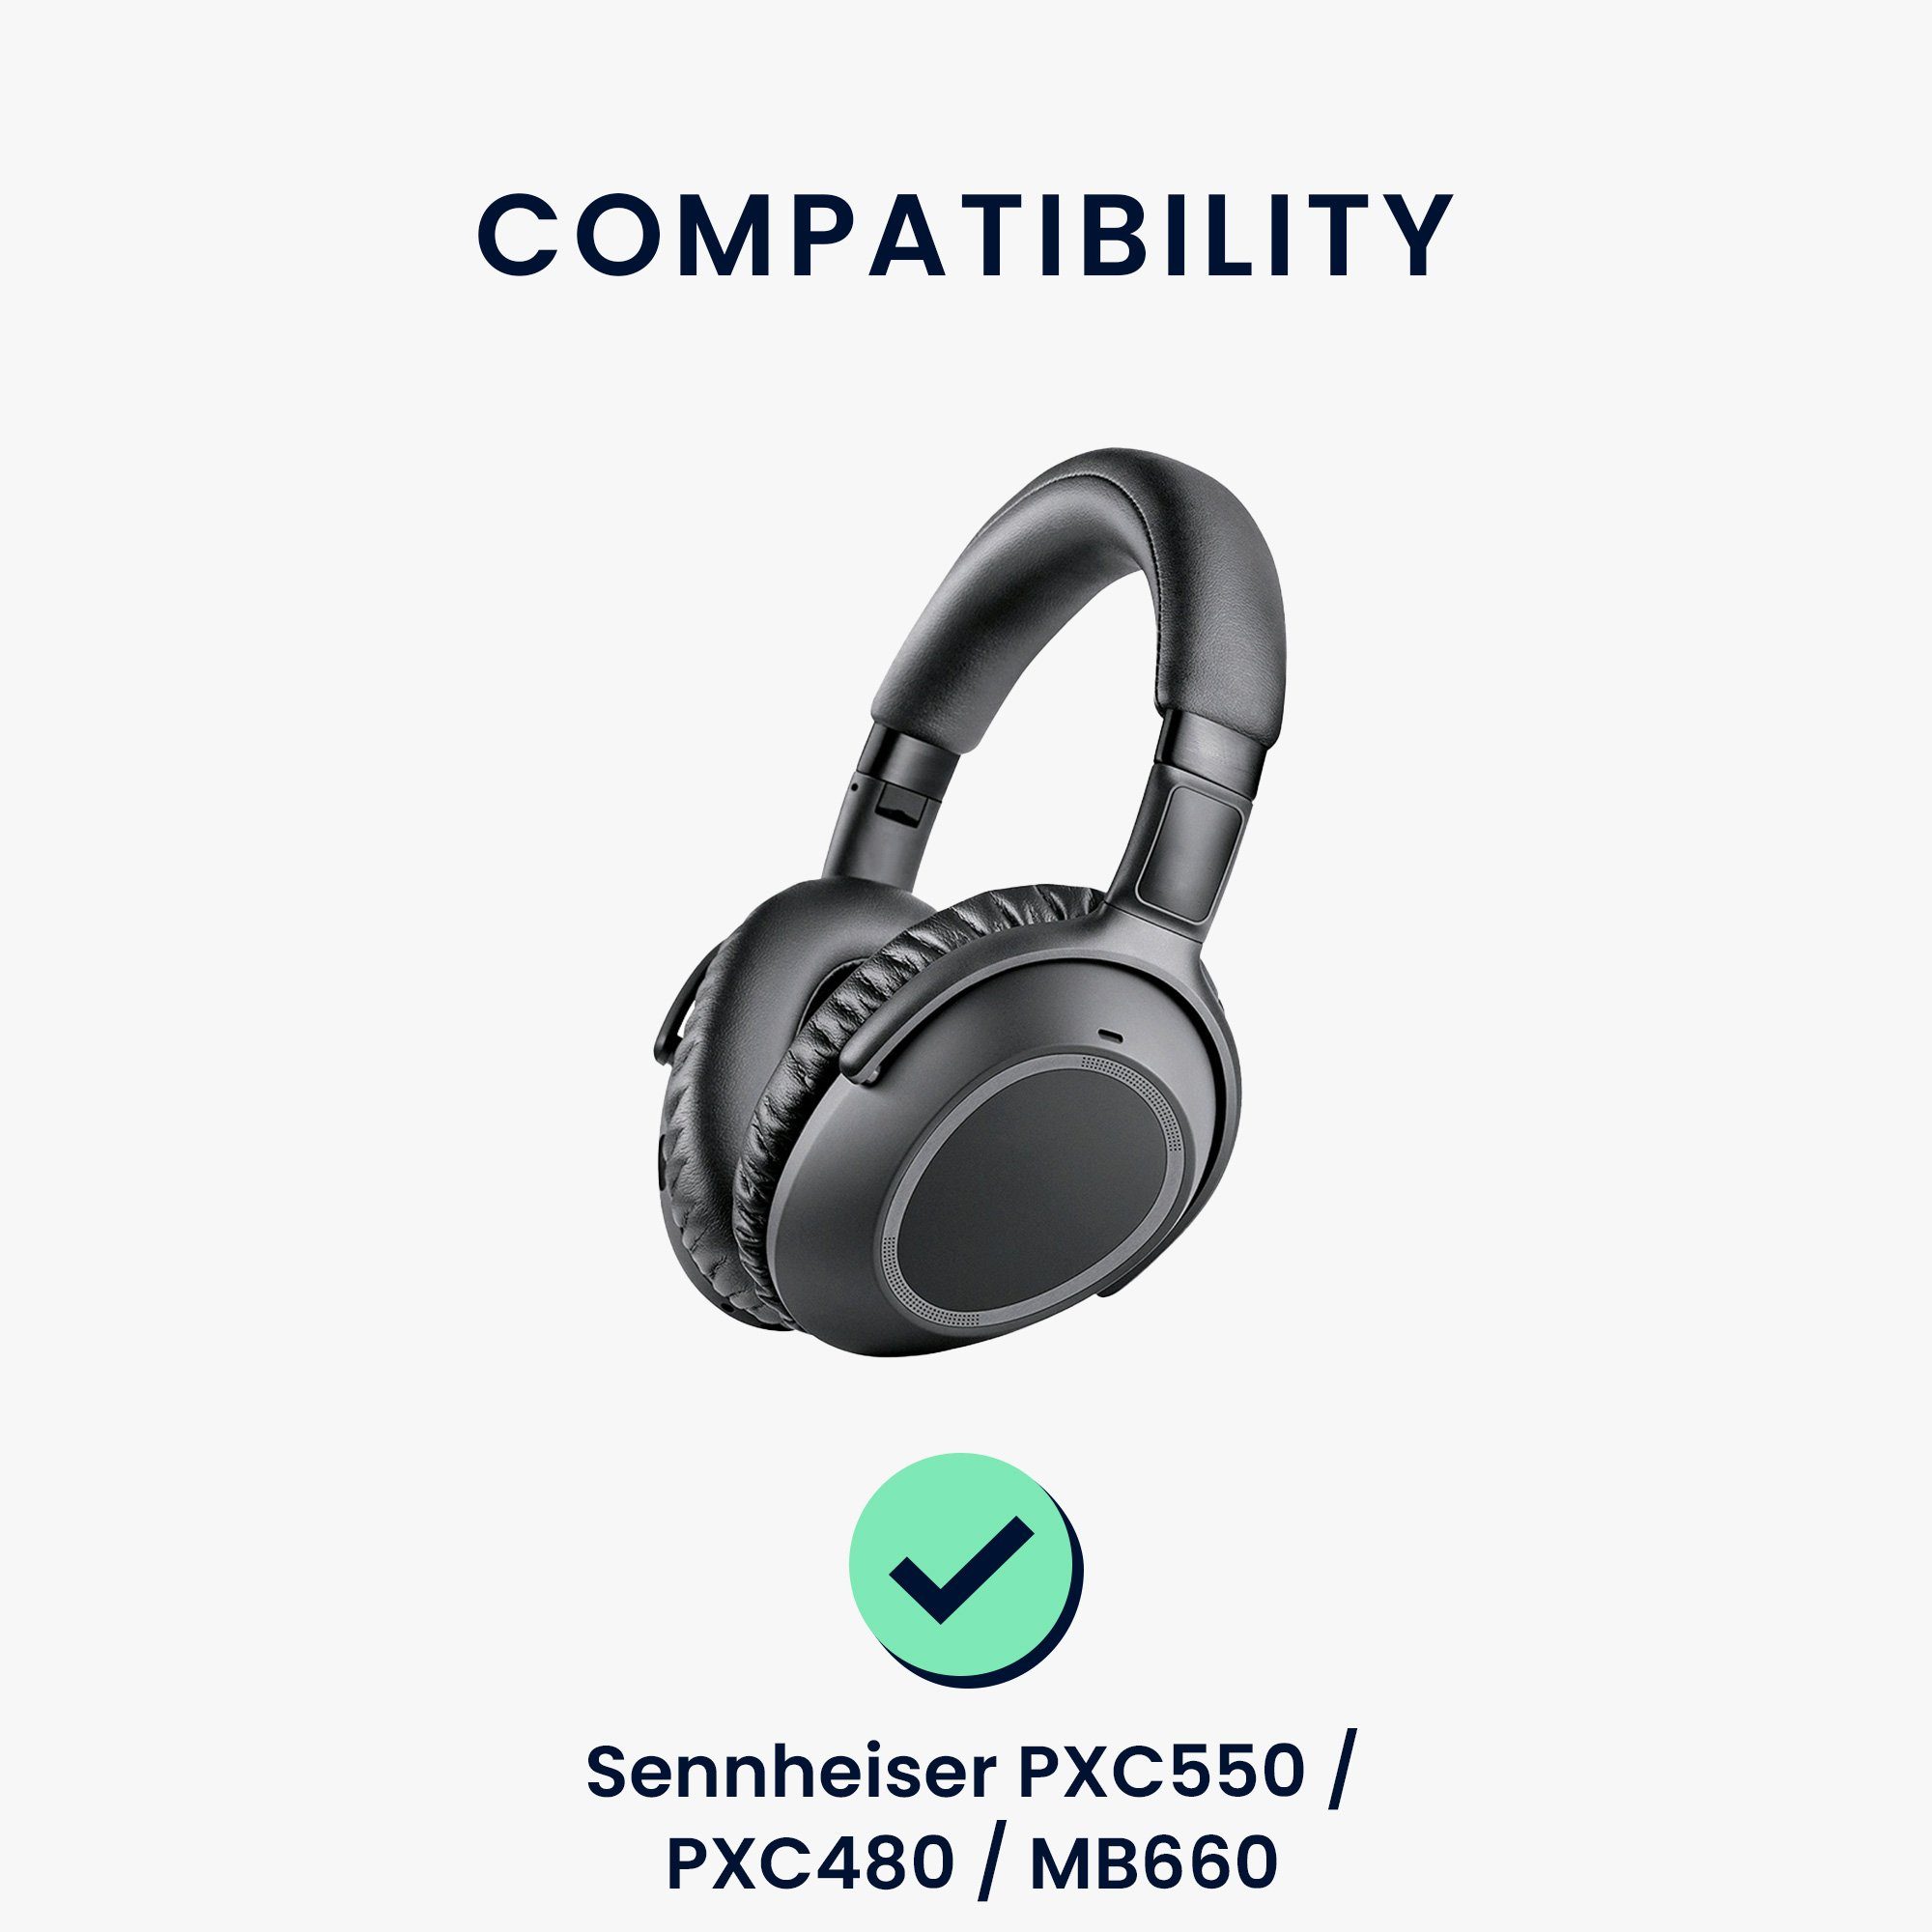 Polster Over für PXC550 Kopfhörer kwmobile für Ohr (Ohrpolster Ohrpolster Kunstleder Sennheiser Headphones) 2x MB660 / PXC480 / Polster - Ear